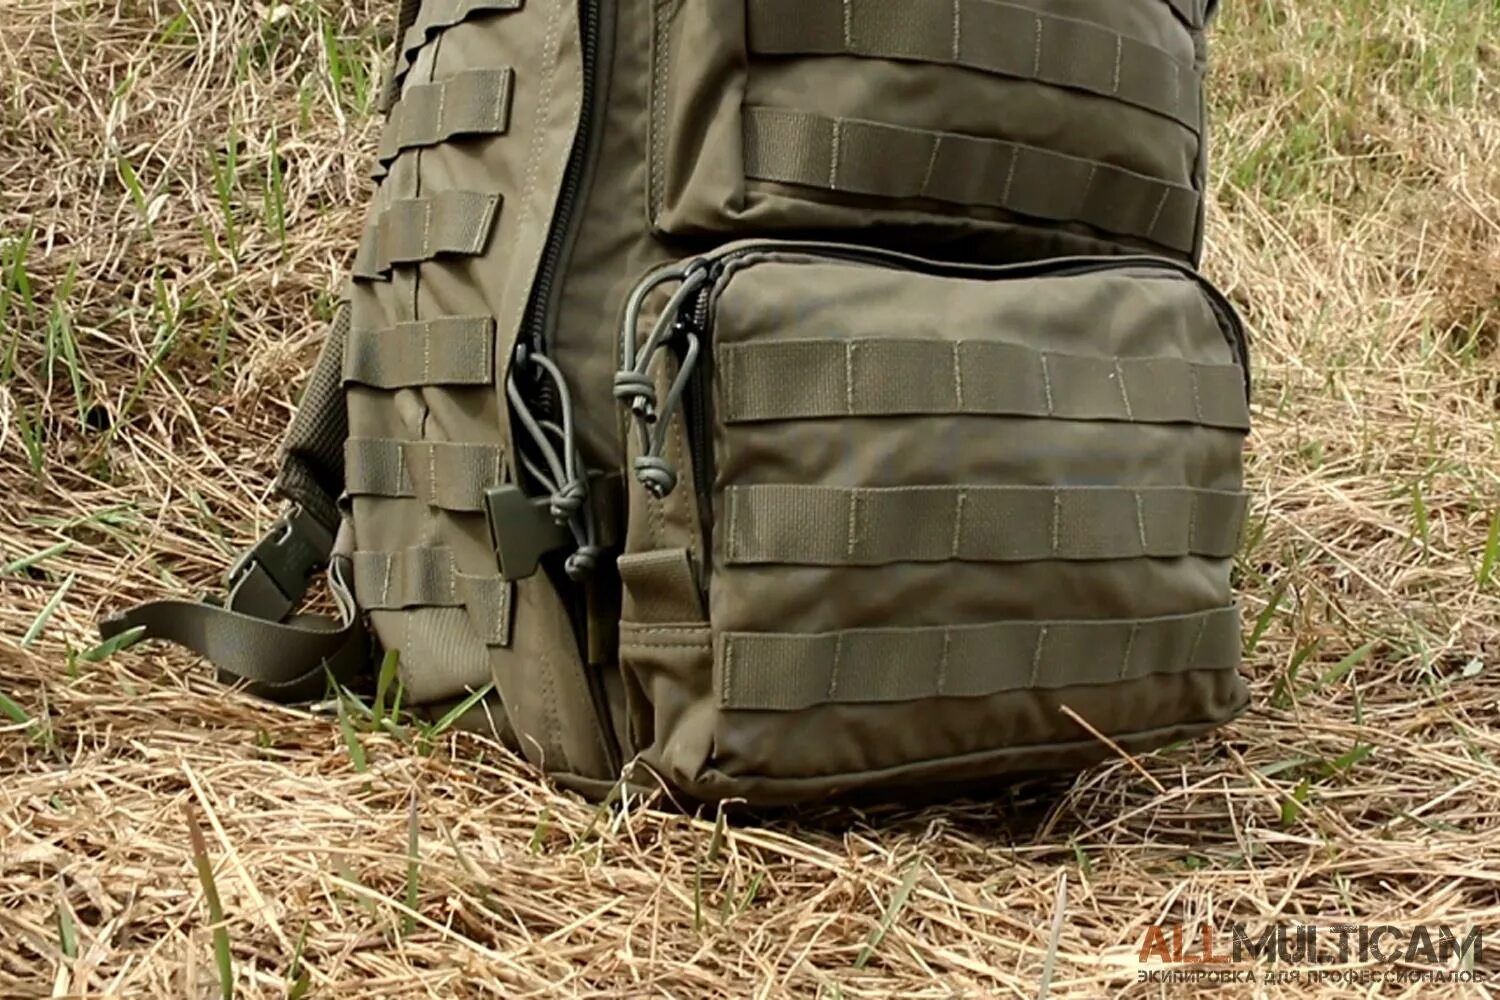 Рюкзак Warrior Assault Systems Predator. Тактический рюкзак Predator Warrior Assault Systems. Рюкзак 762 Tactical тактический. Рюкзак Warrior Predator Backpack. Predator systems